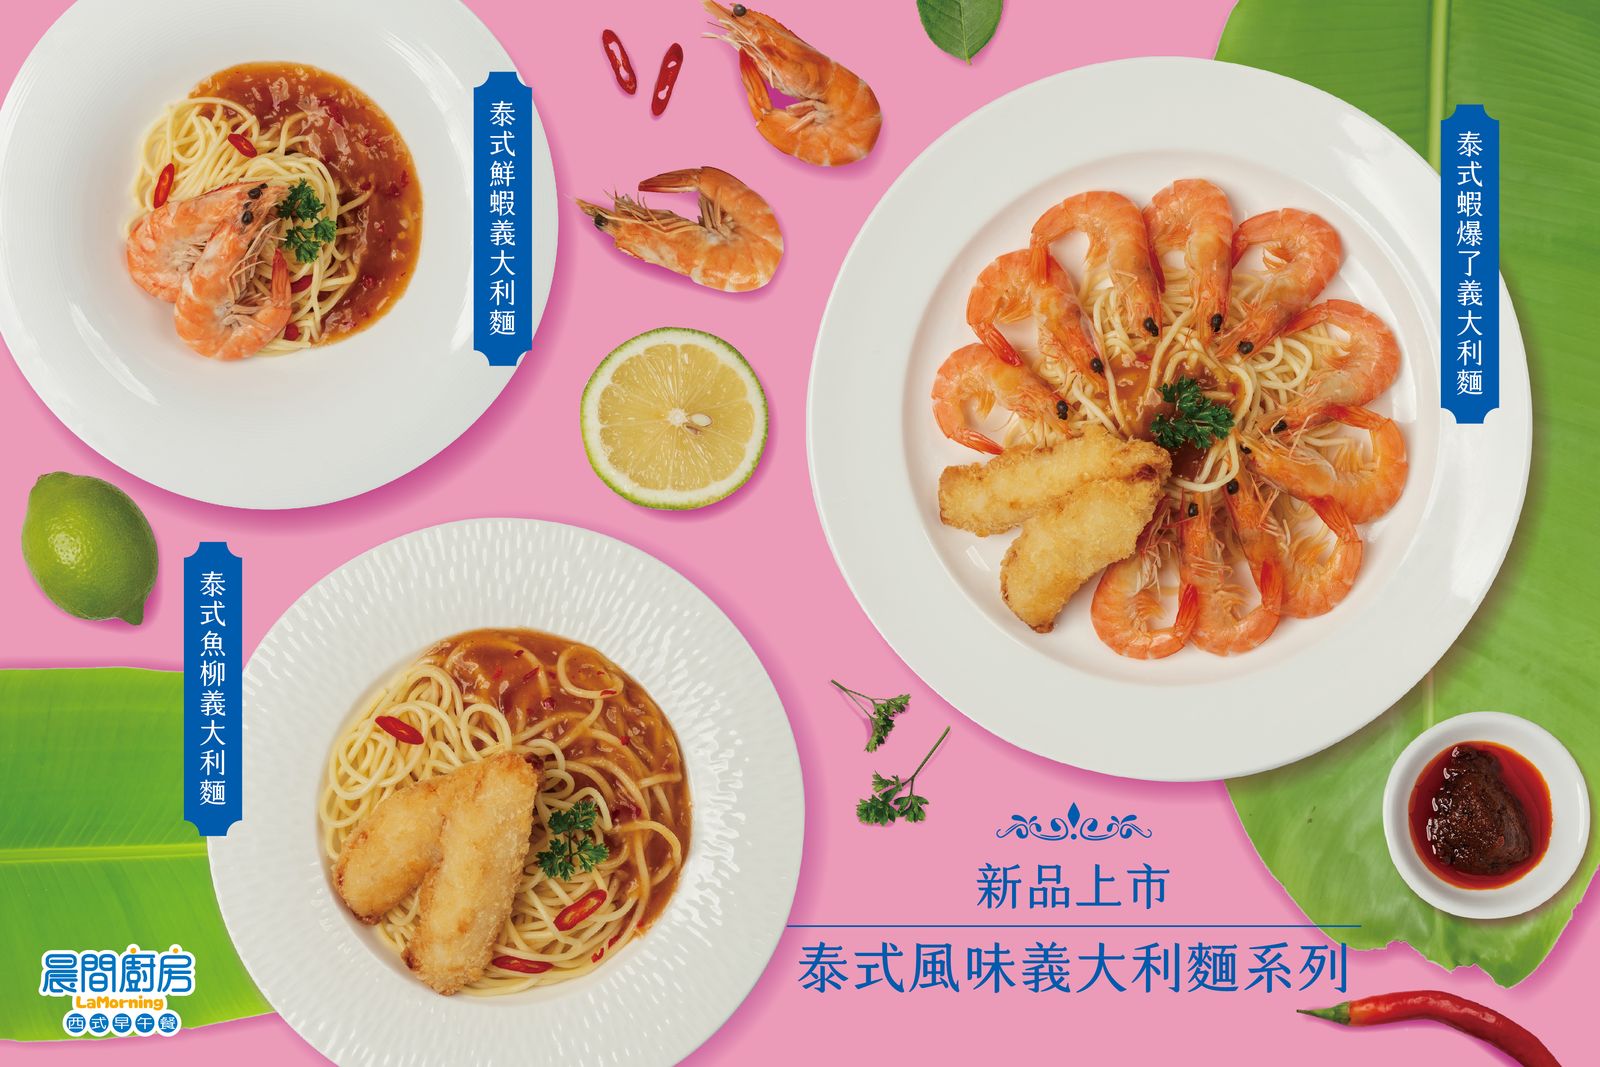 知名連鎖餐飲品牌「晨間廚房」7/1起推出泰式風味義大利麵系列